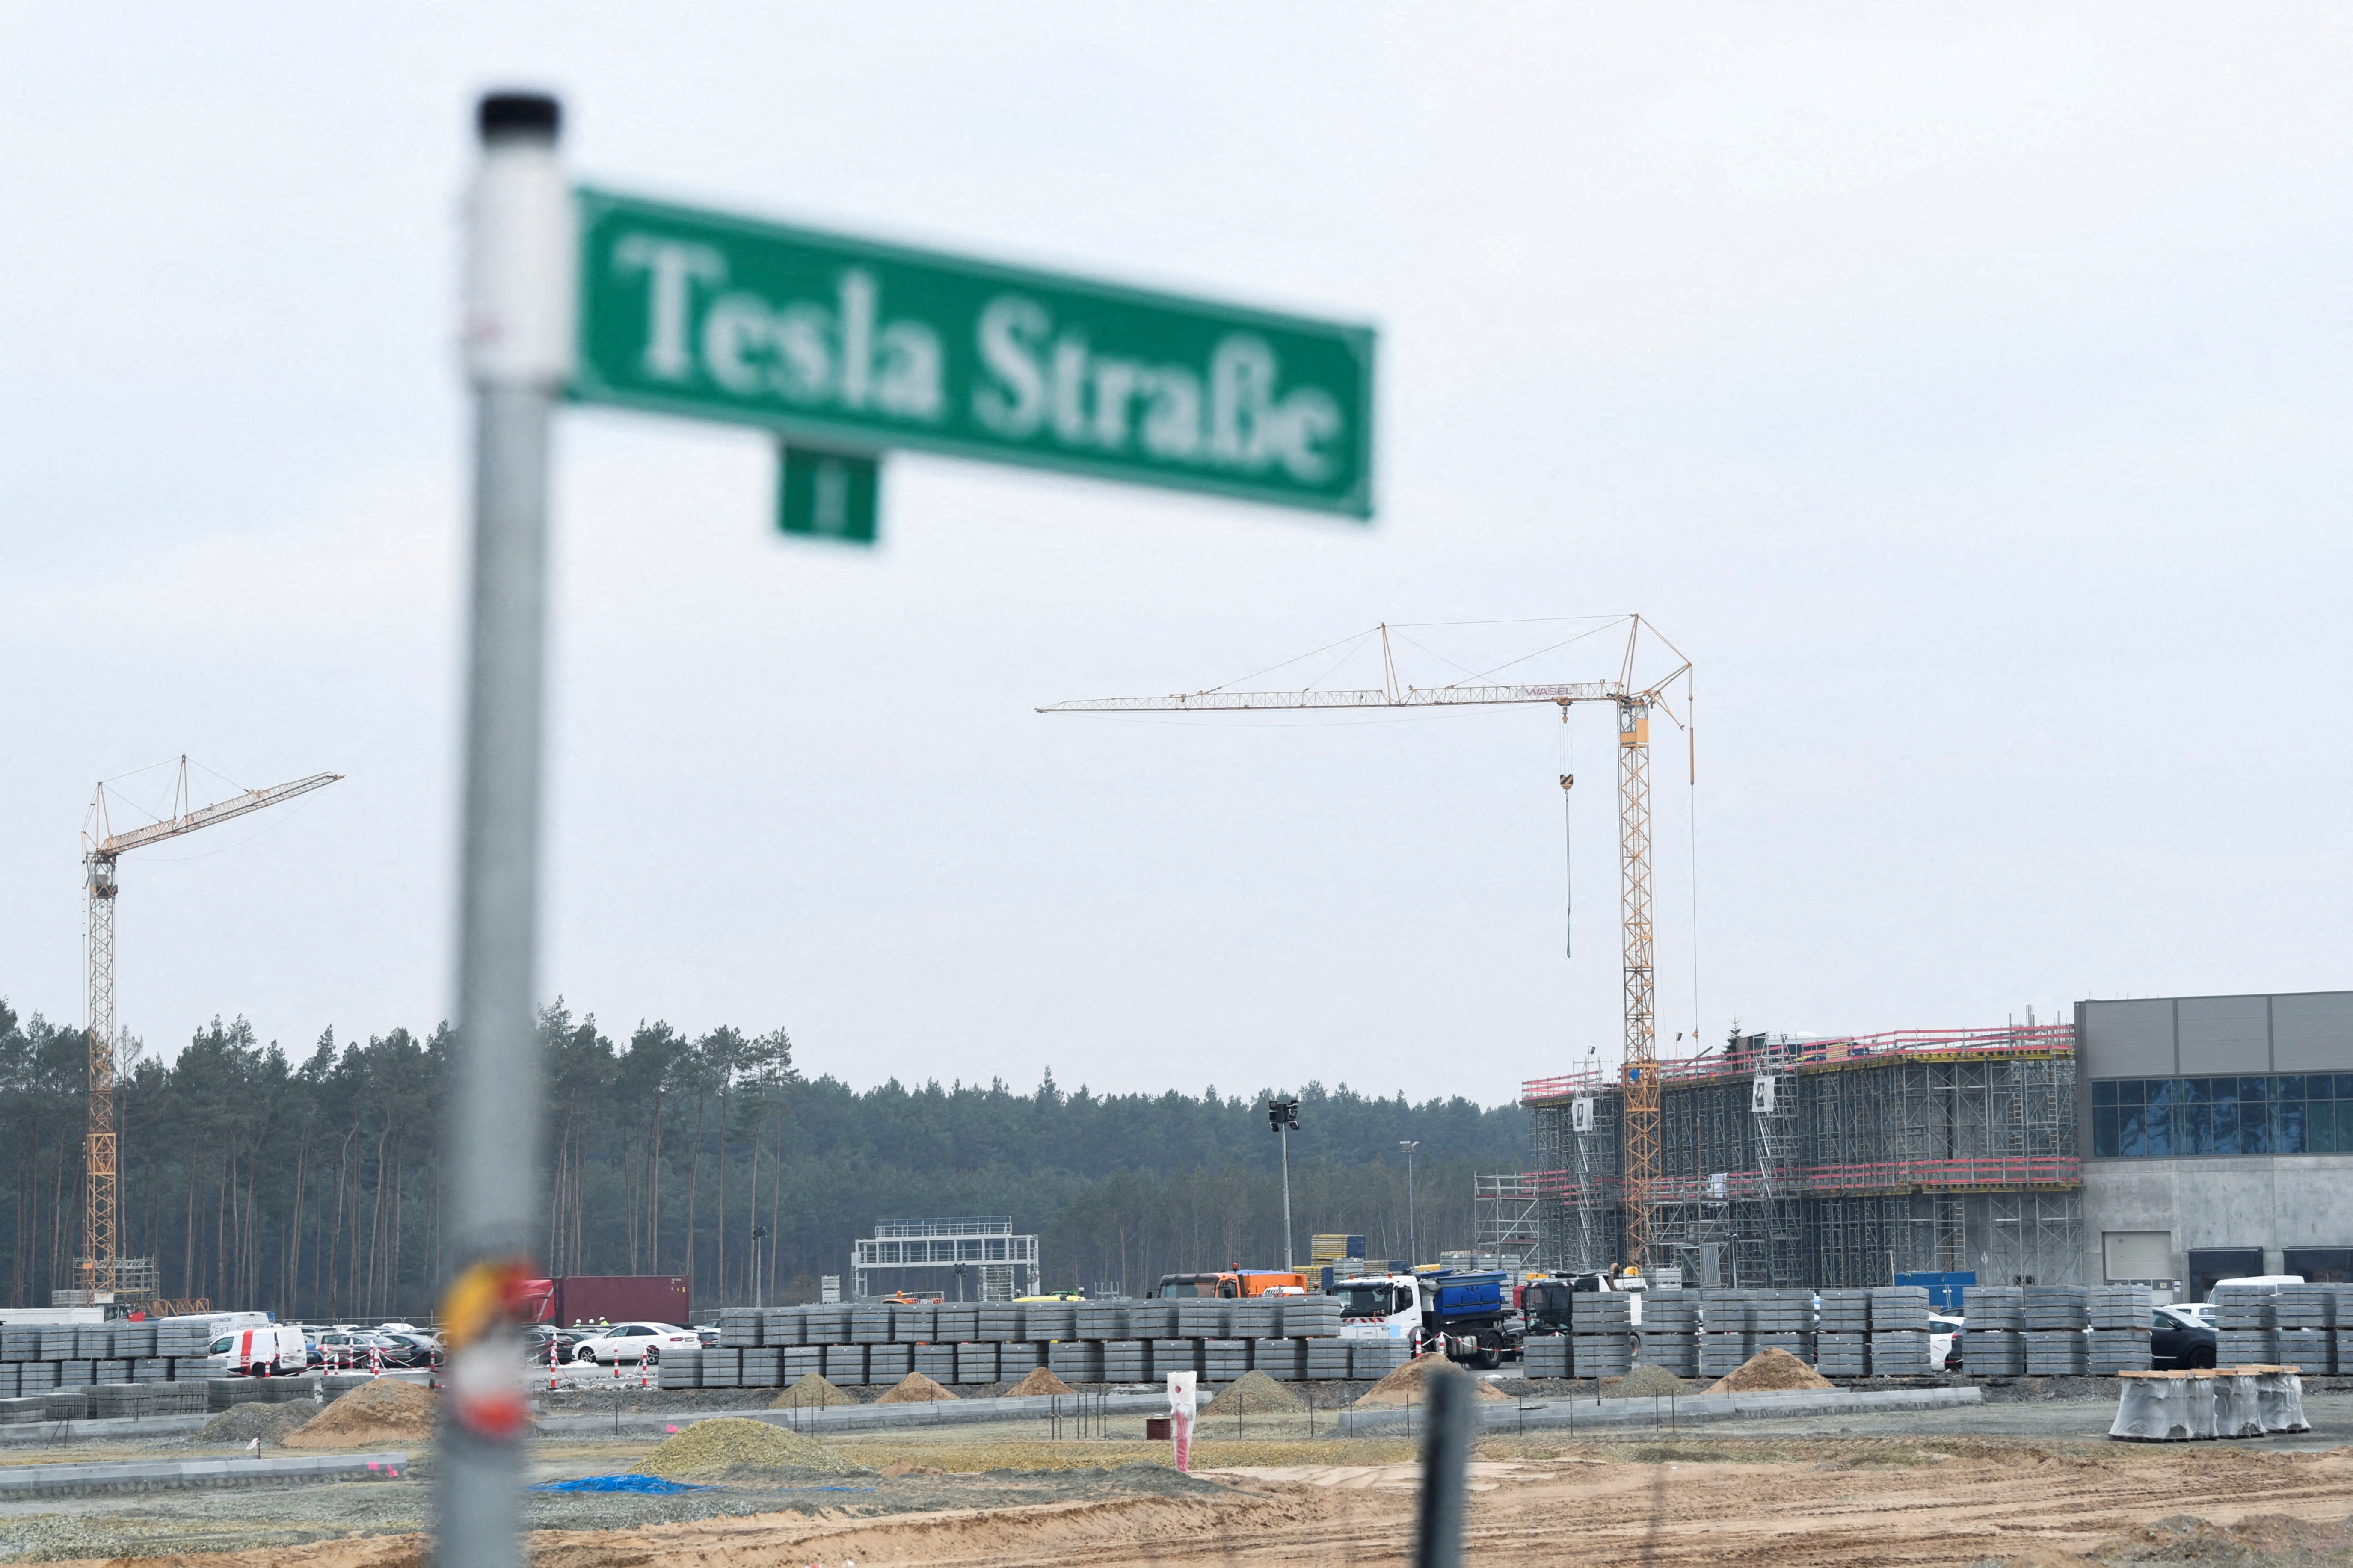 Tesla's electric car factory in Gruenheide